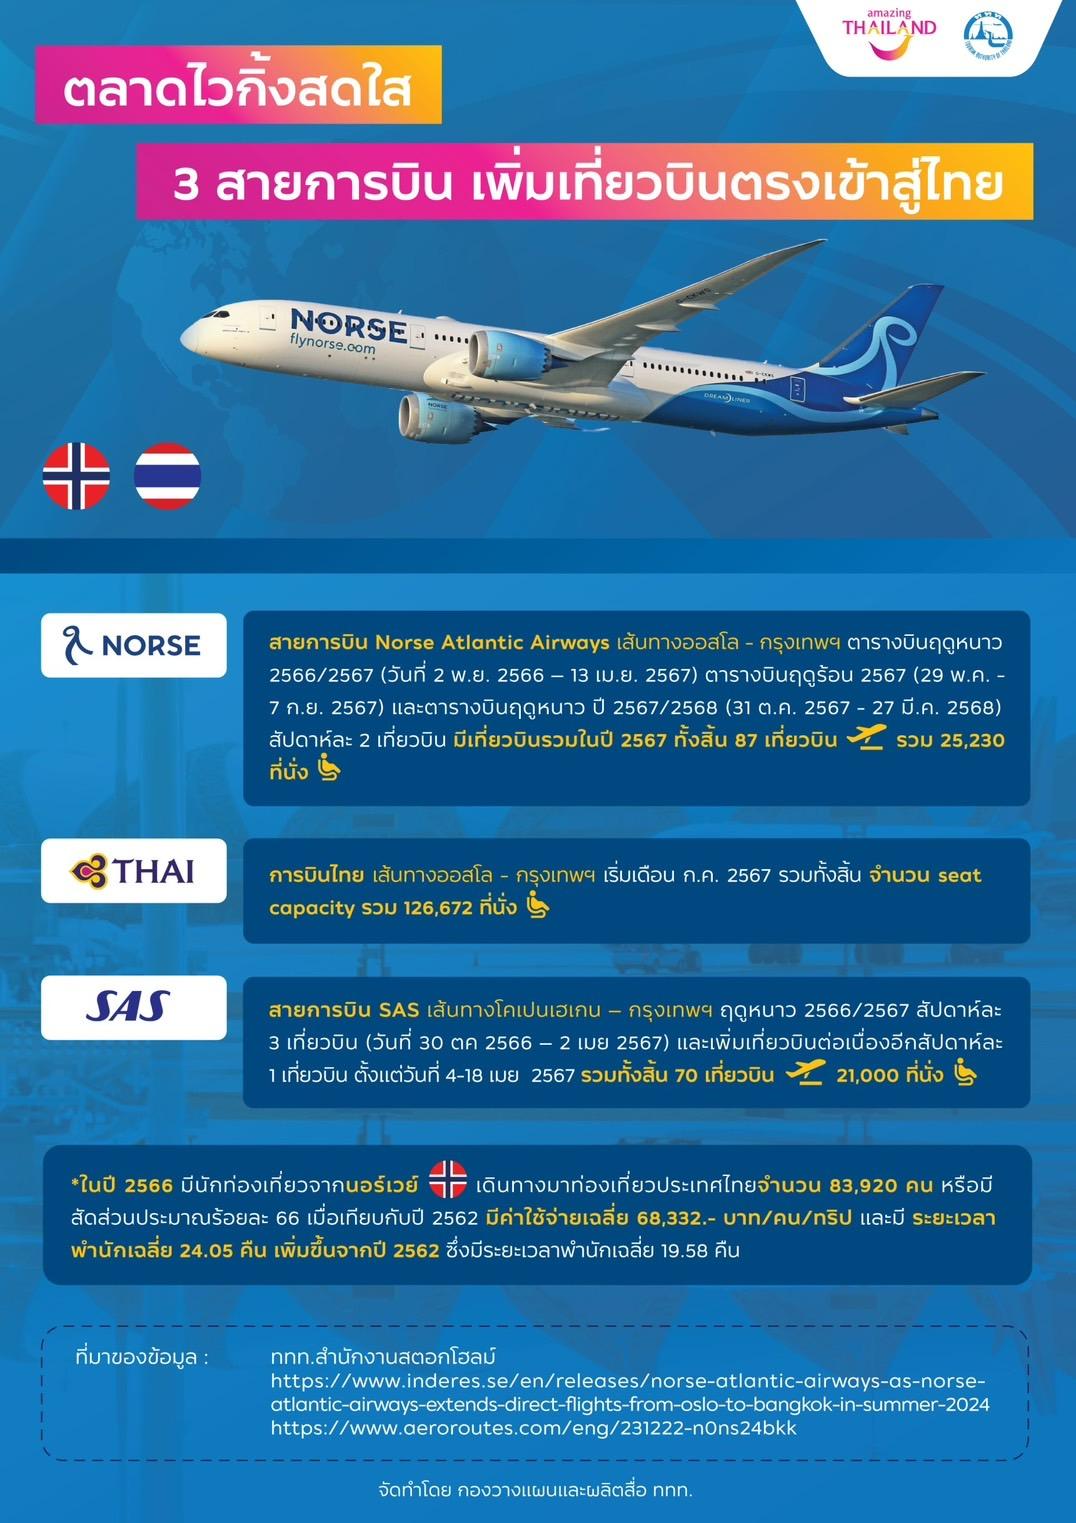 สายการบิน Norse Atlantic Airways ประกาศเพิ่มจำนวนเที่ยวบินสู่ประเทศไทย เส้นทางออสโล – กรุงเทพฯ ดึงนักท่องเที่ยวคุณภาพกลุ่มประเทศสแกนดิเนเวีย